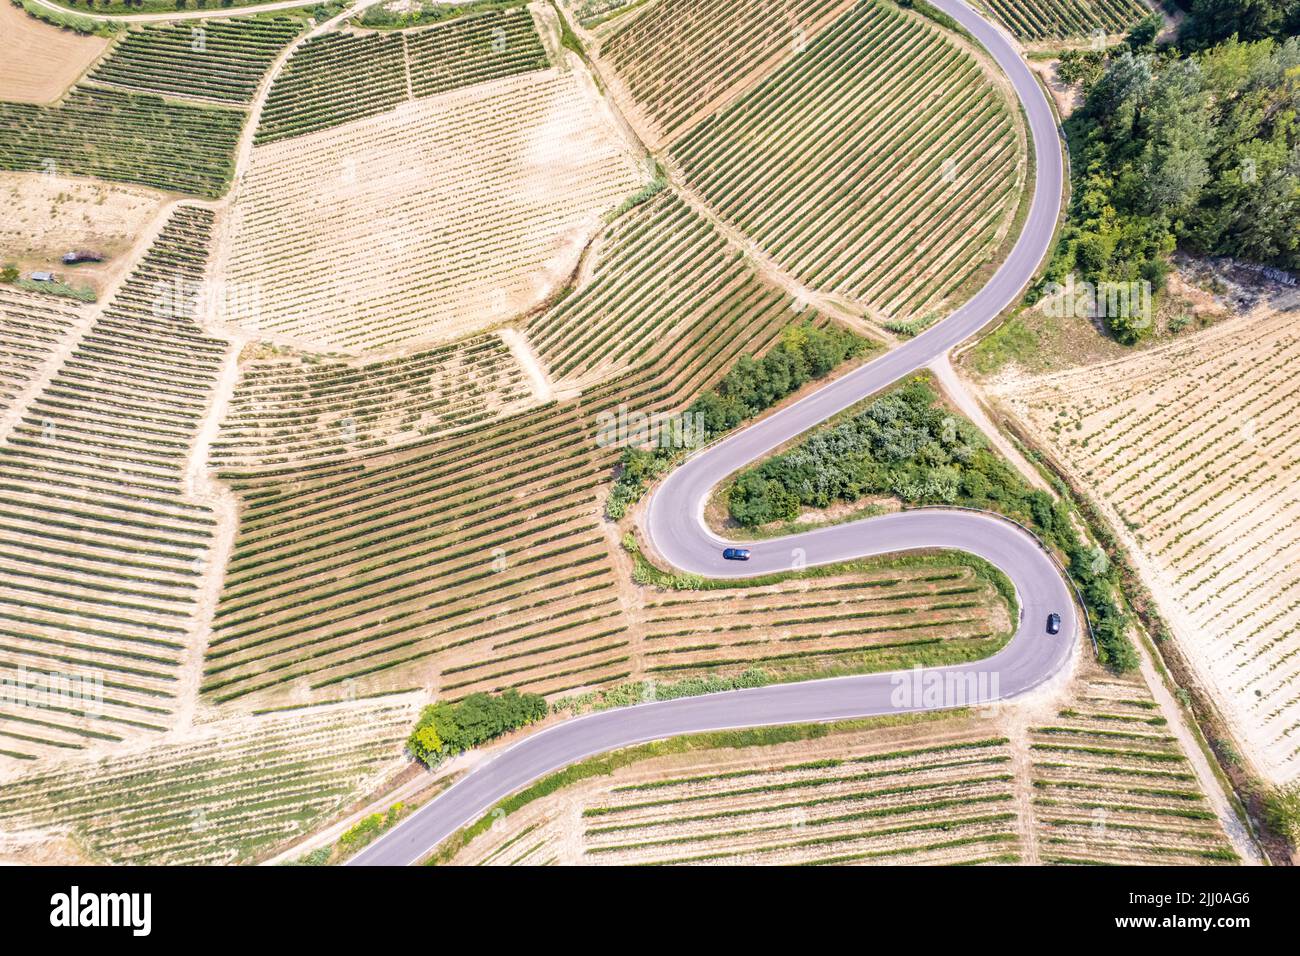 Vista aérea de la Ruta Romántica de Langhe y Roero entre paisajes interminables de viñedos. Piamonte Italia Foto de stock